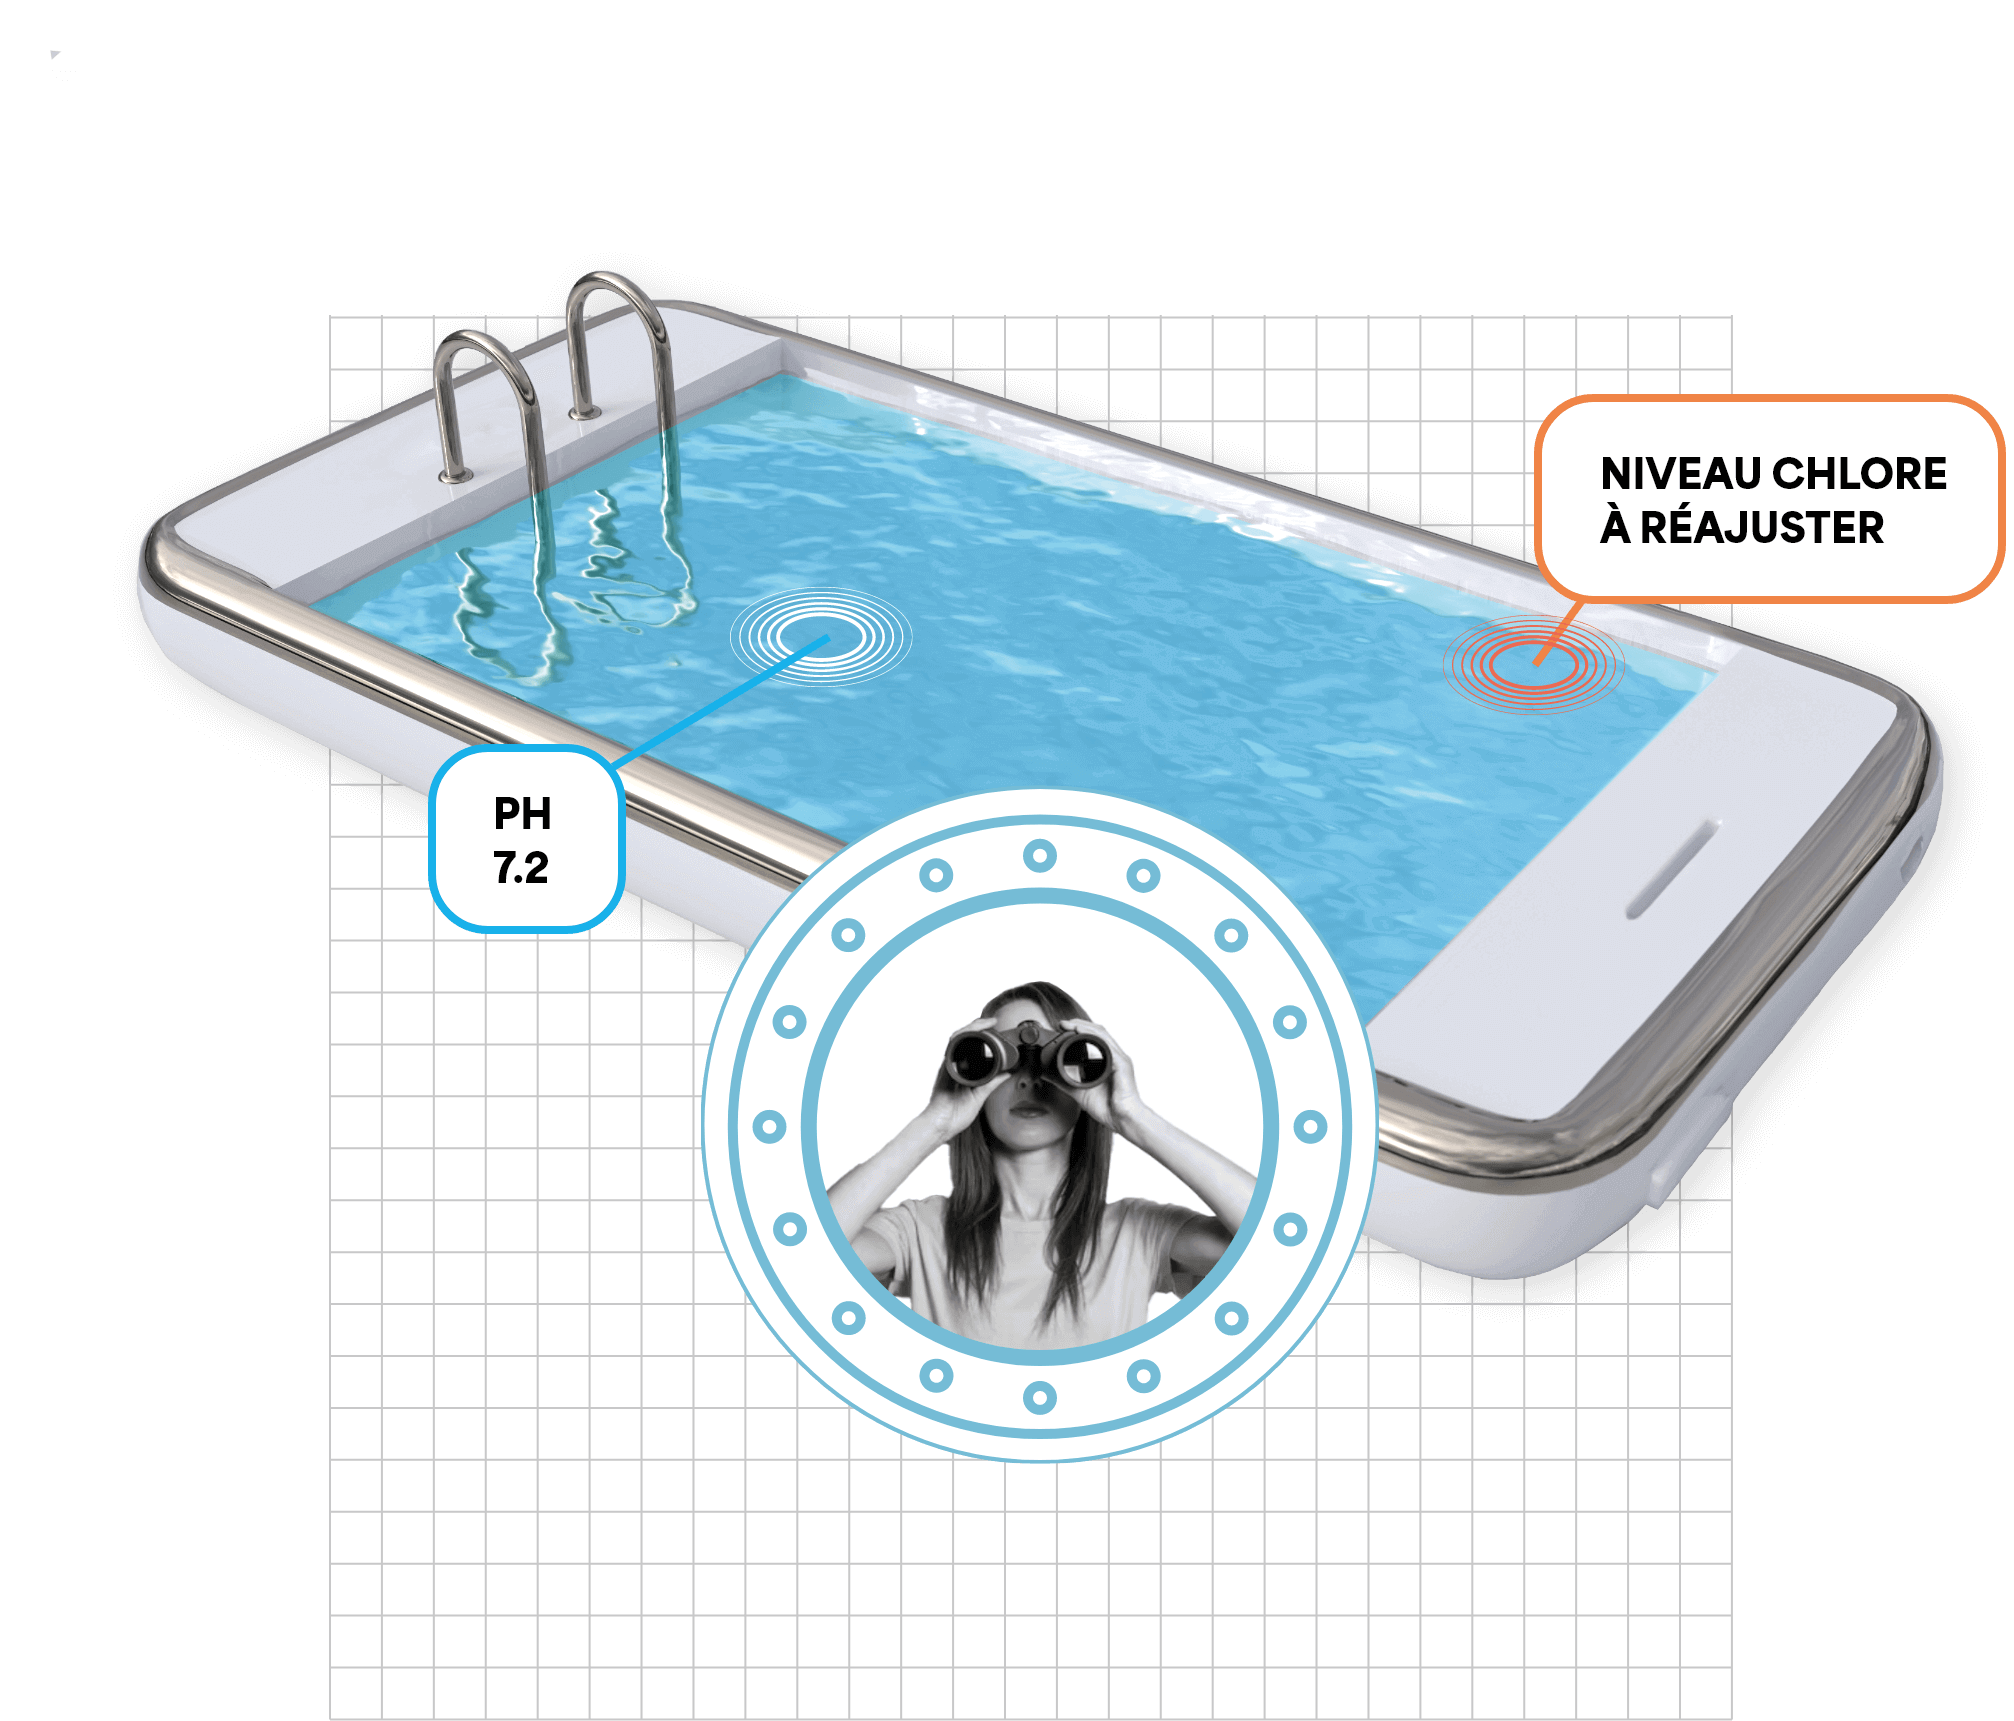 My Pool Process - 1ère application de gestion et recueil de données pour les piscines et bassins professionnels et particuliers